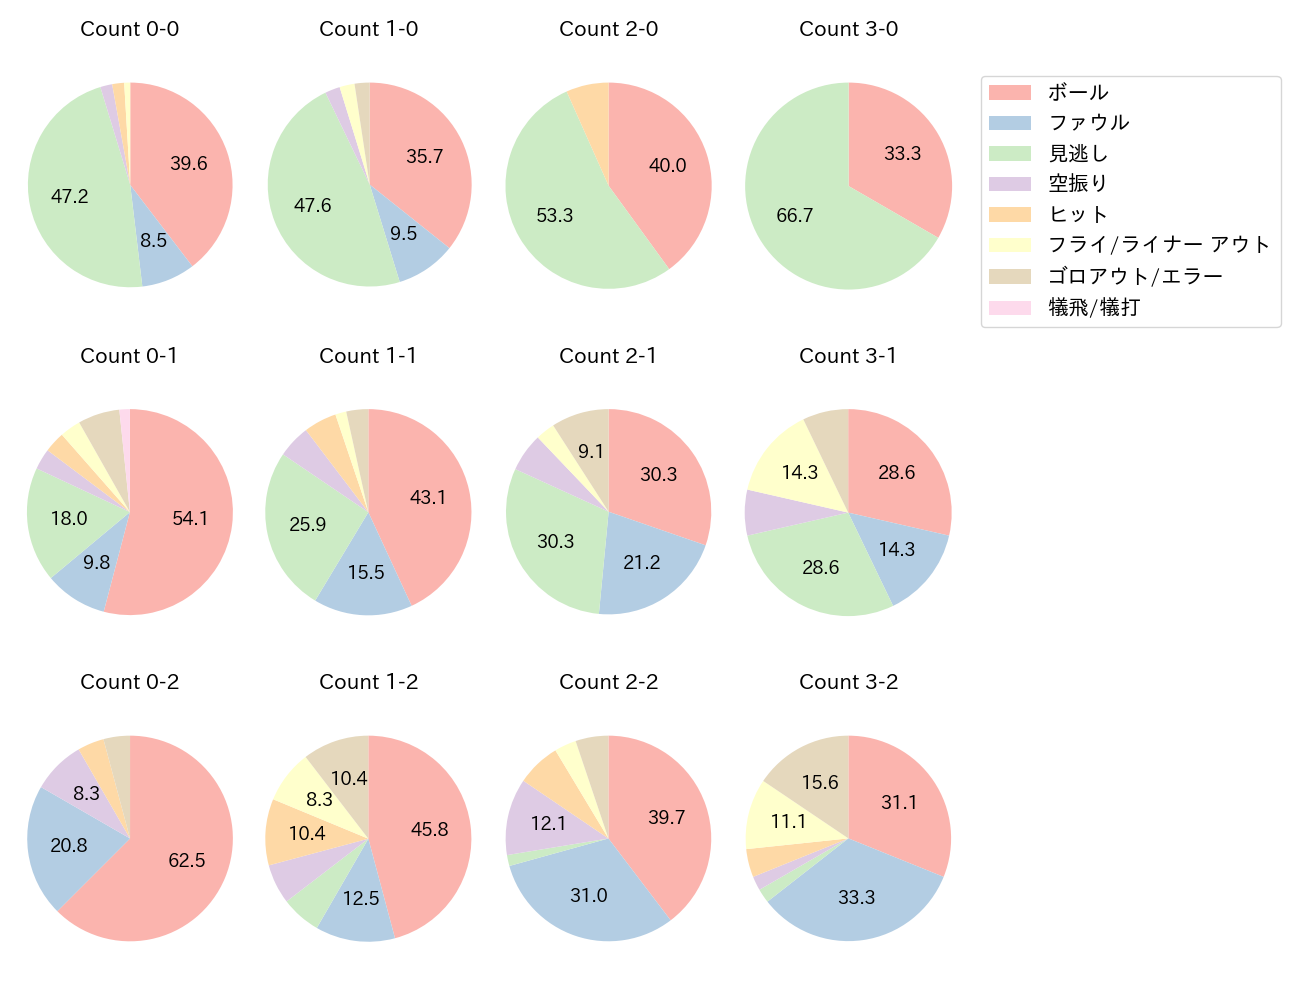 西川 遥輝の球数分布(2021年9月)